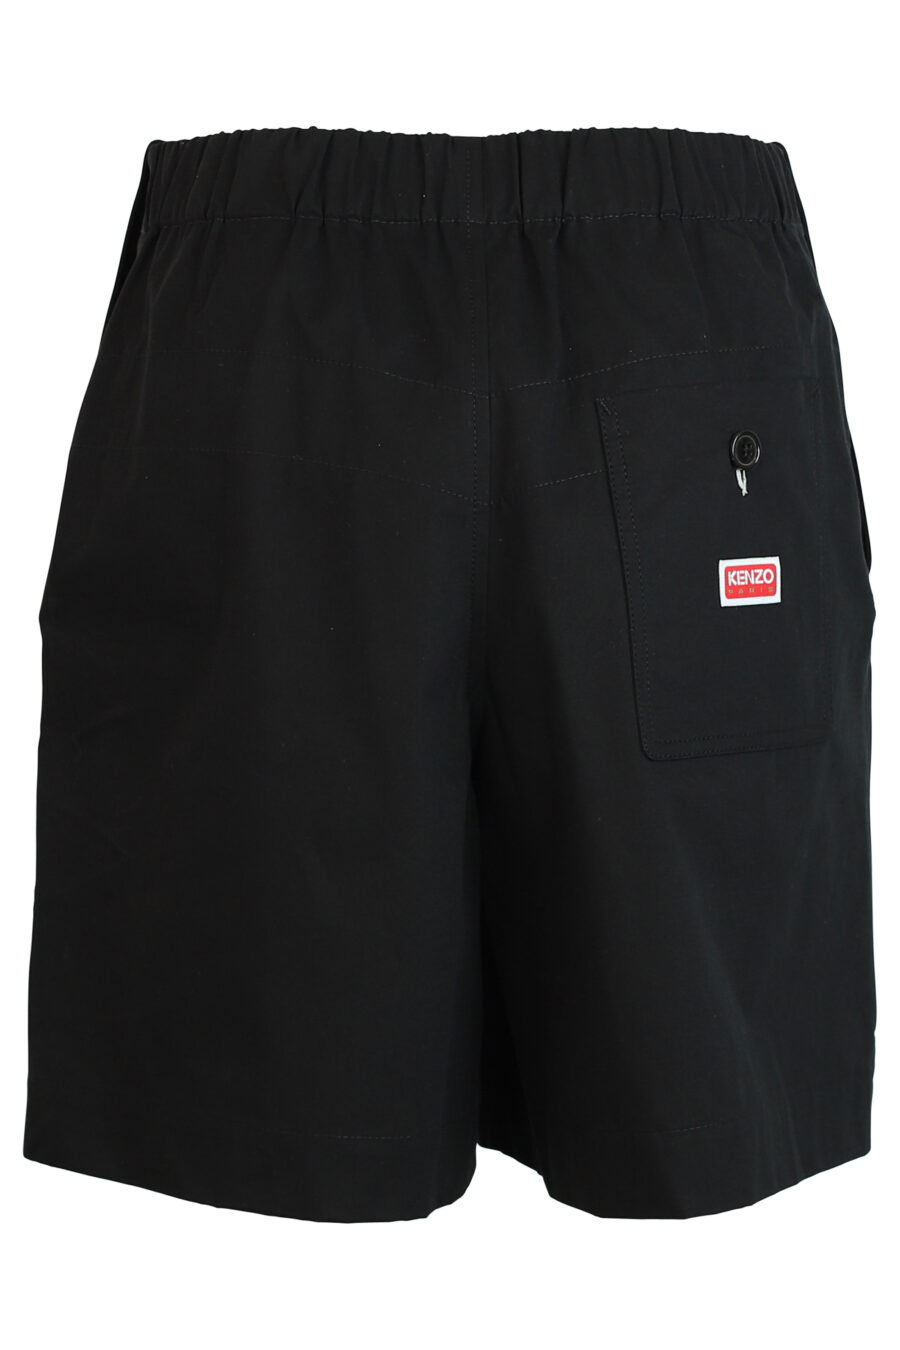 Schwarze Shorts mit Logo - 3612230419773 2